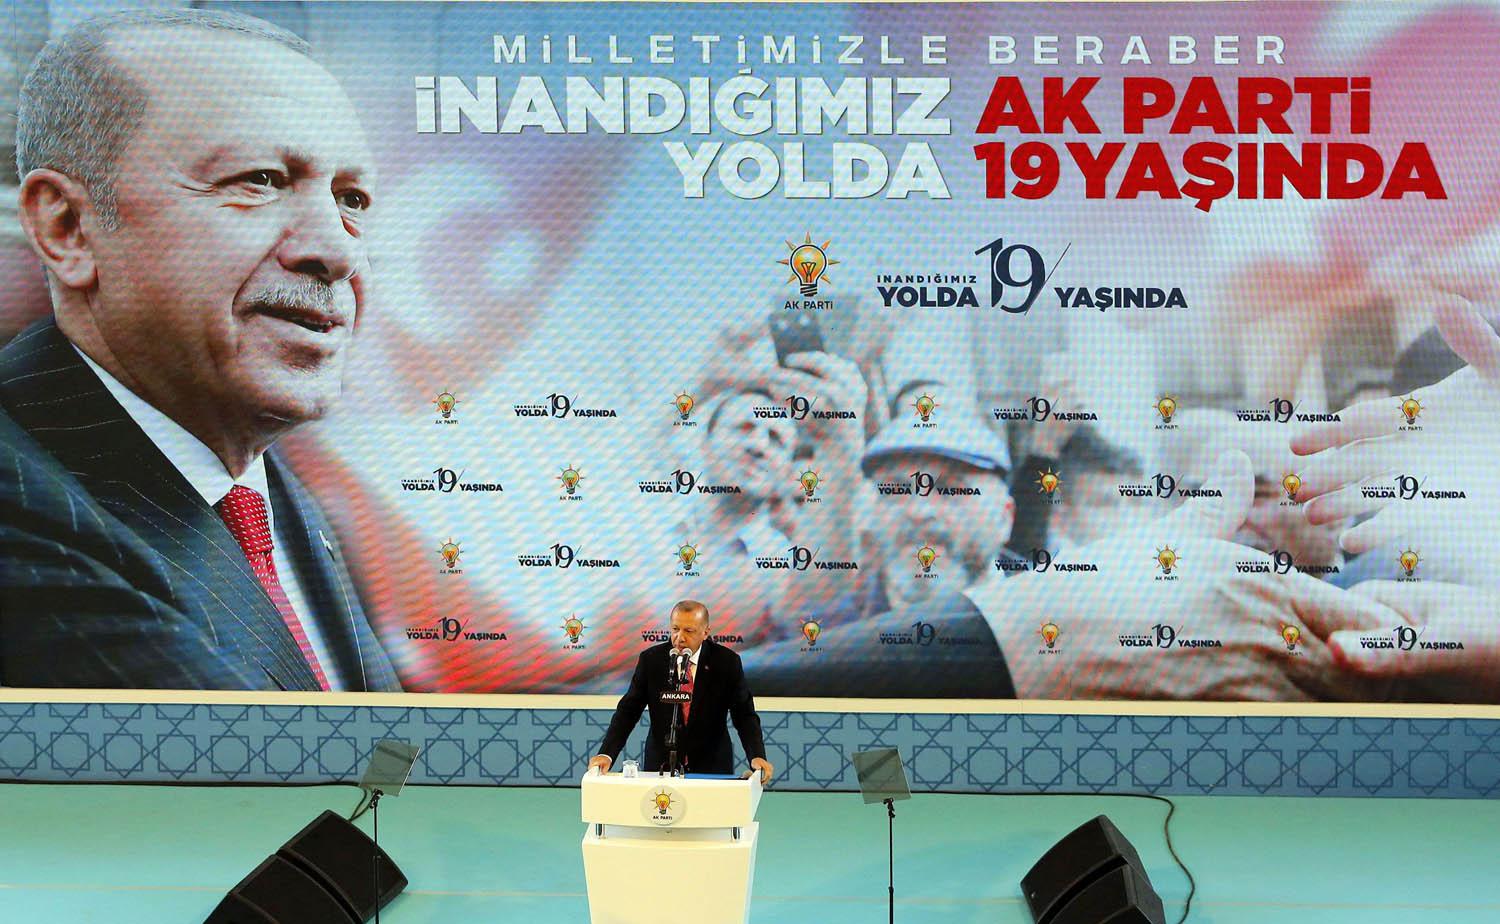 الرئيس التركي رجب طيب اردوغان يلقي كلمة في اجتماع حزبي